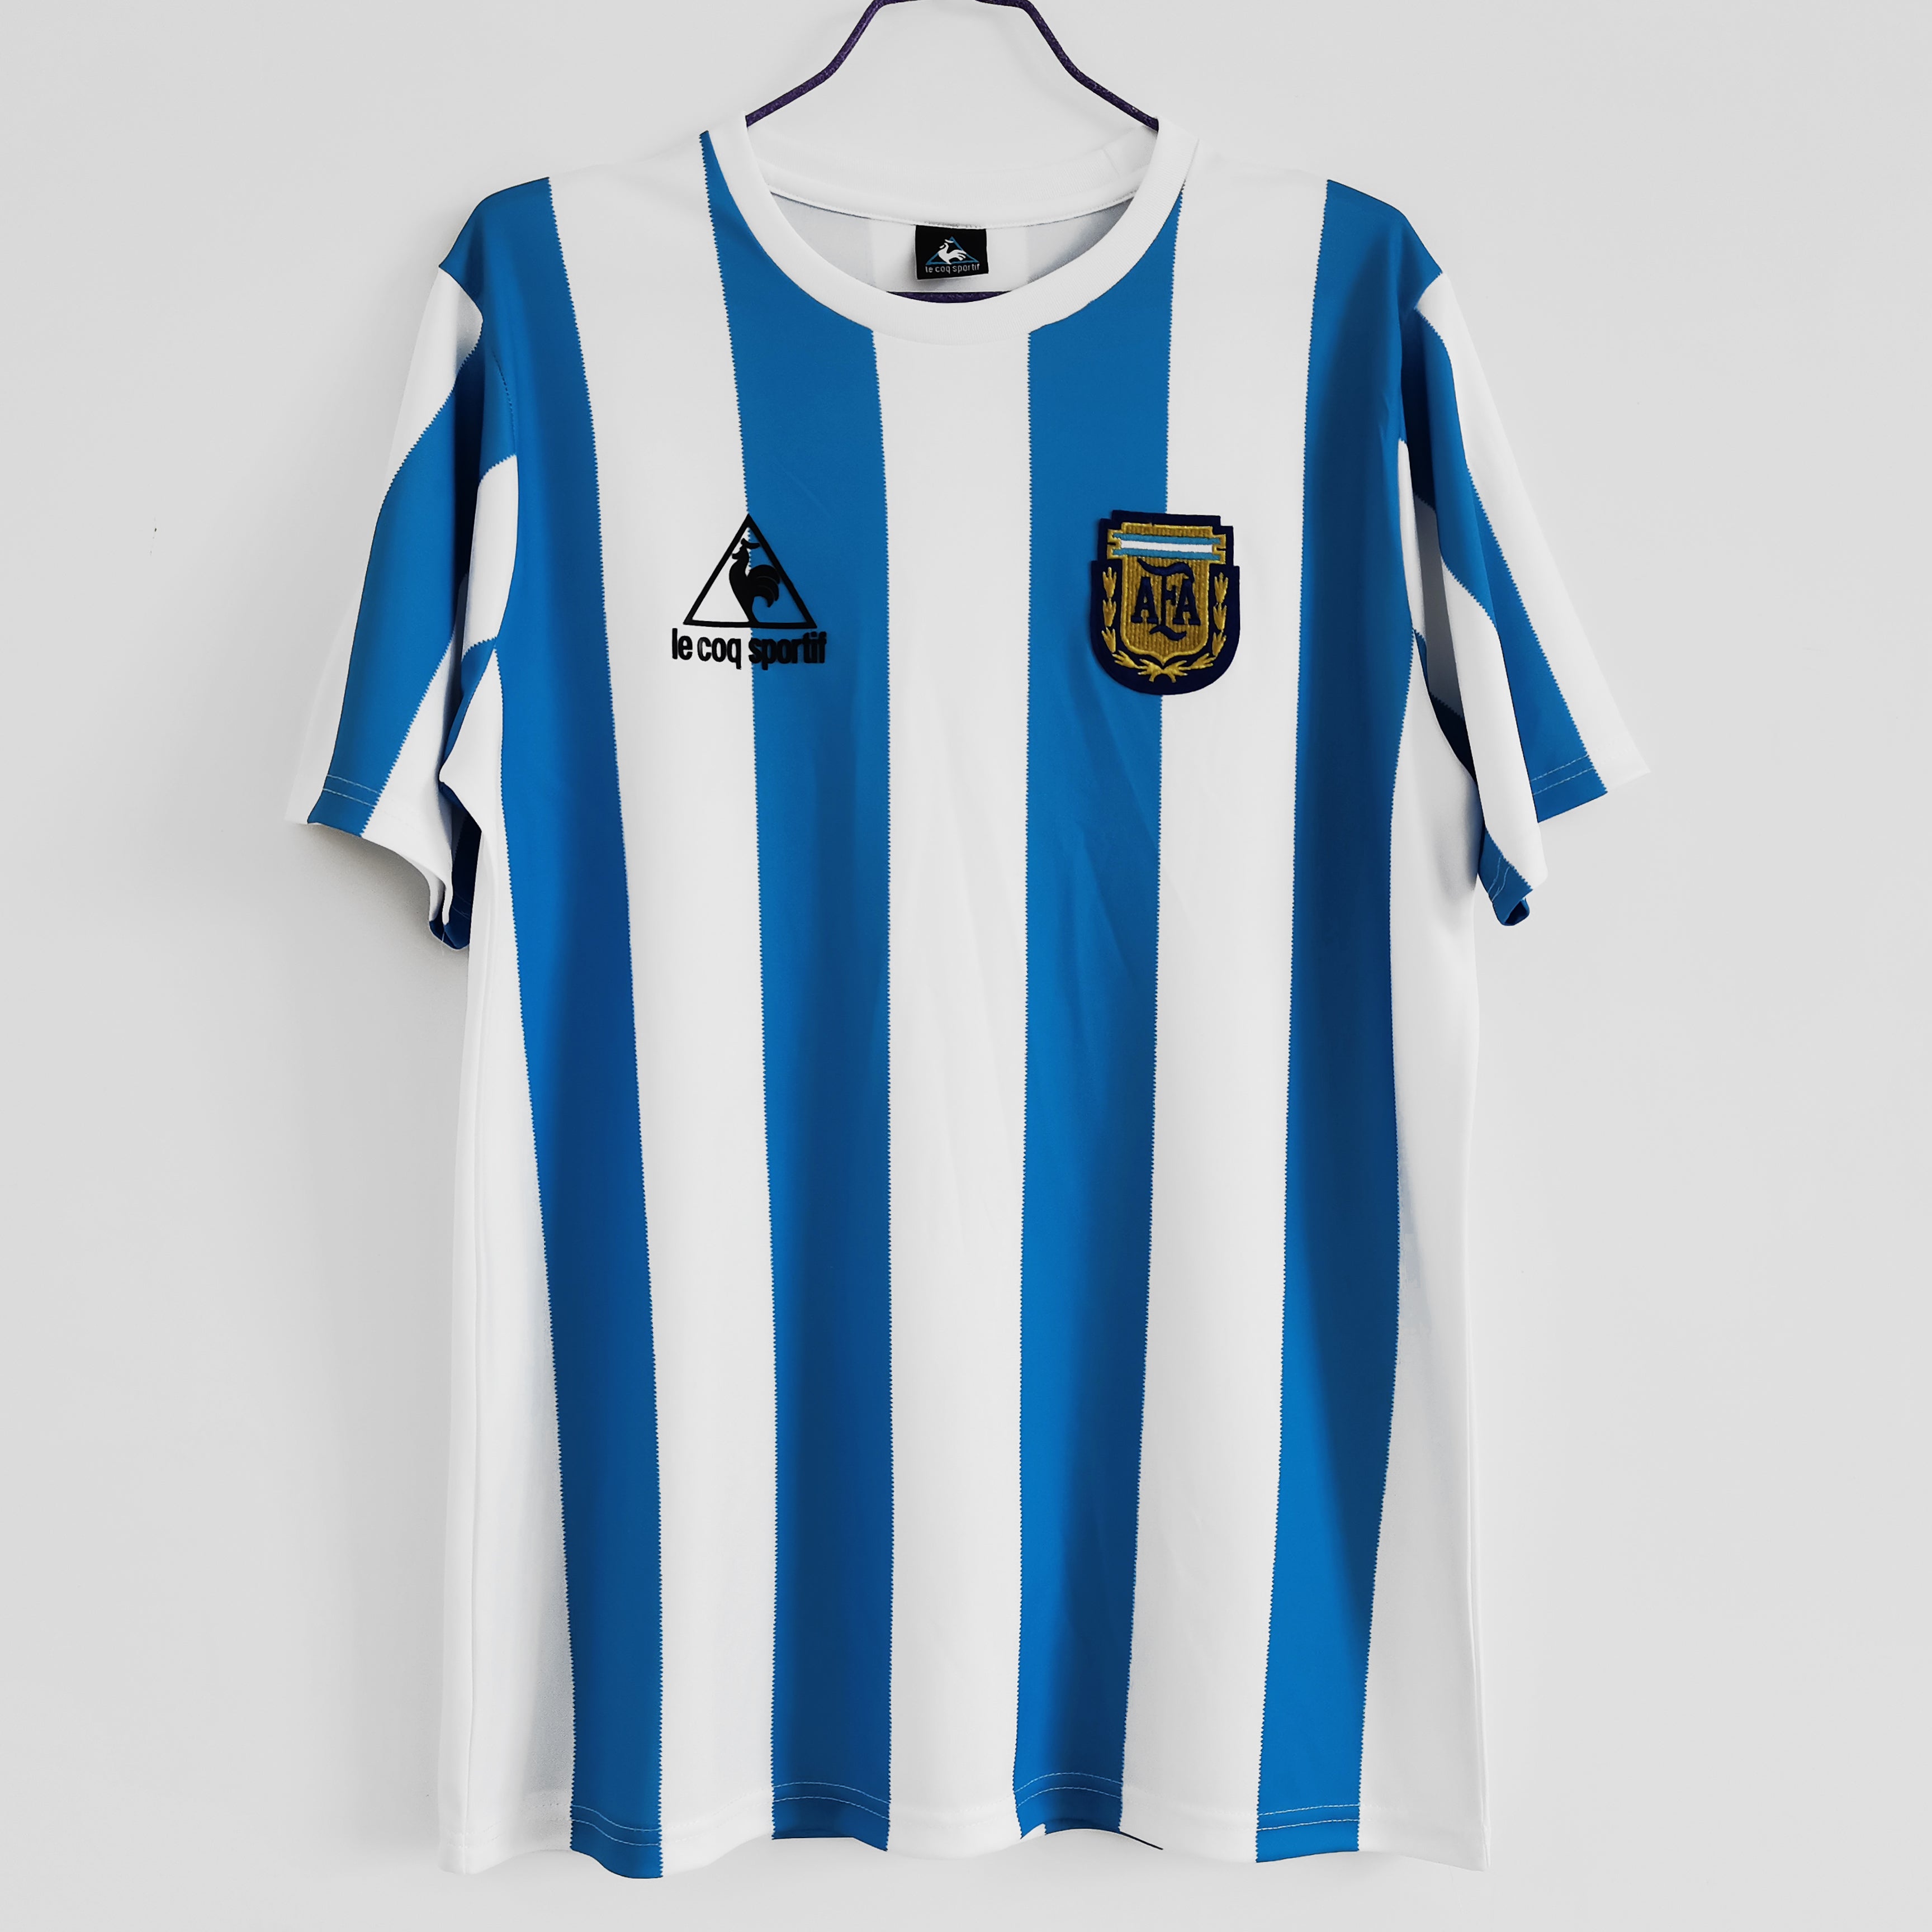 1986 Argentina Home Maradona Shirt - That Retro Shirt Store